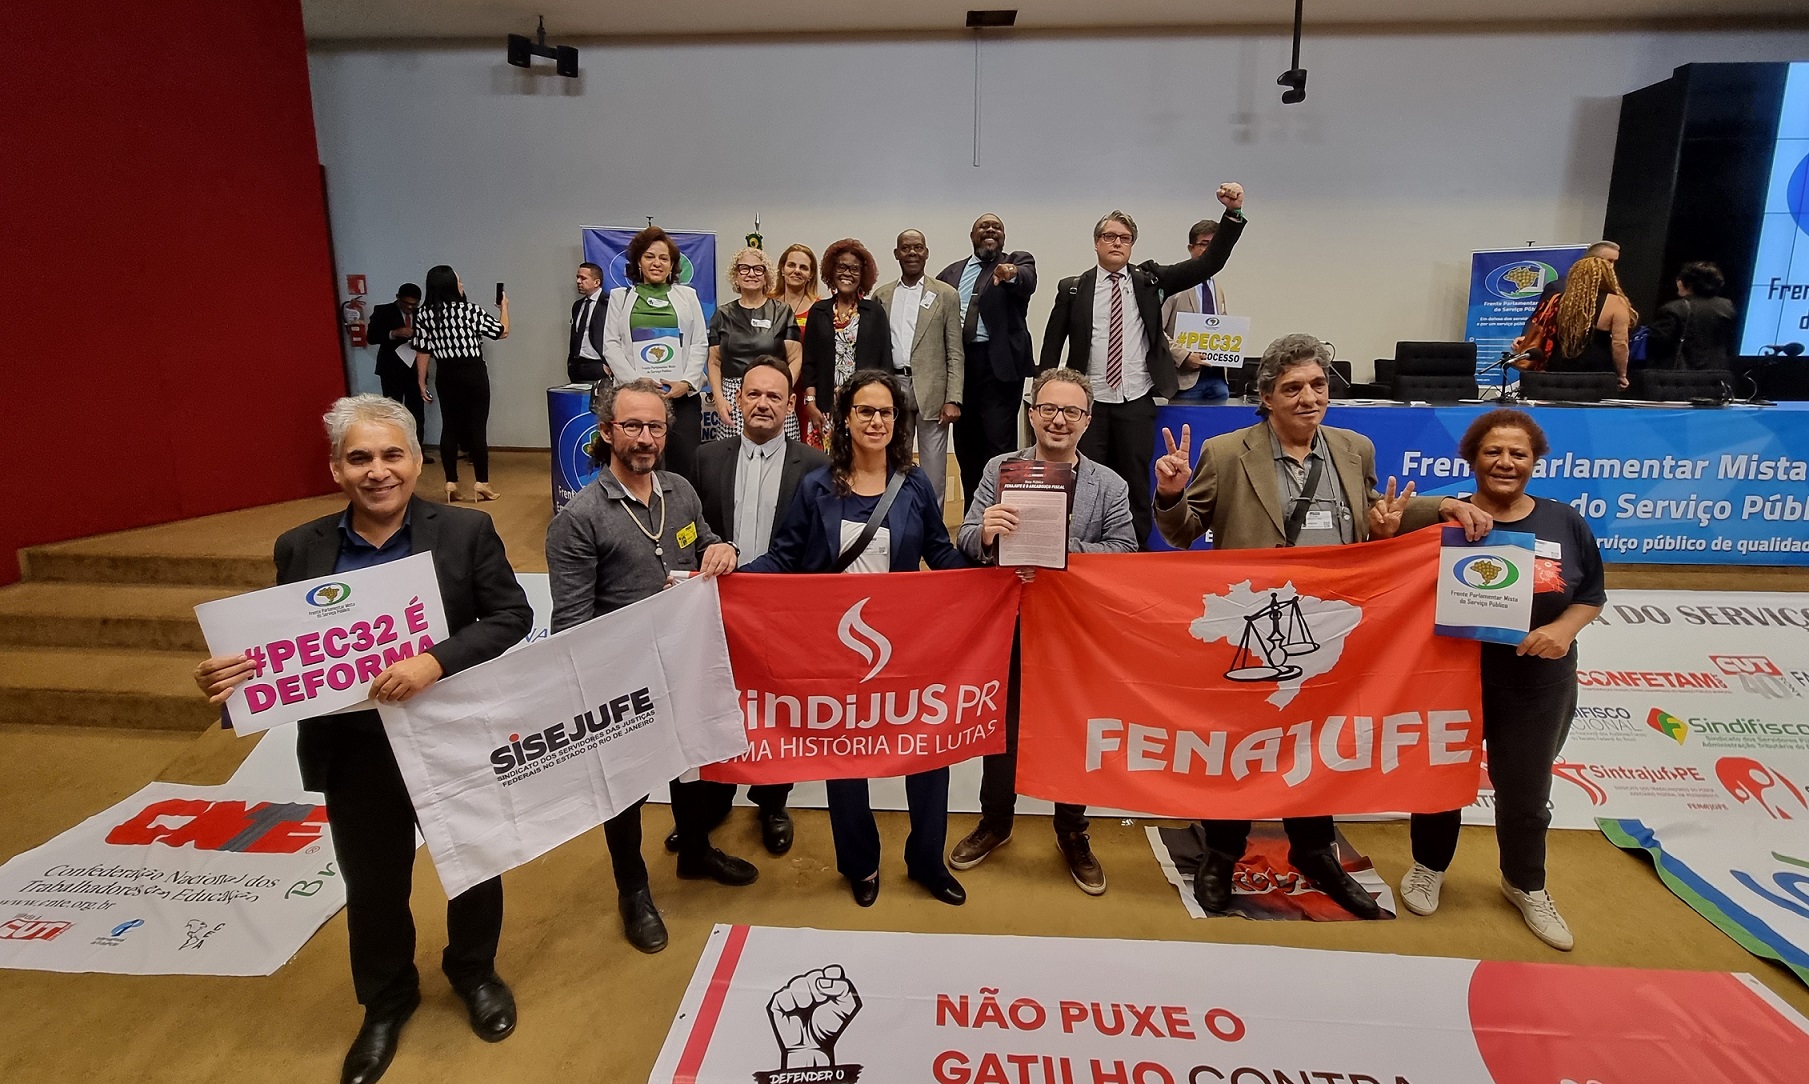 Fenajufe e Sindicatos participam do relançamento da Frente Parlamentar Mista em Defesa do Serviço Público